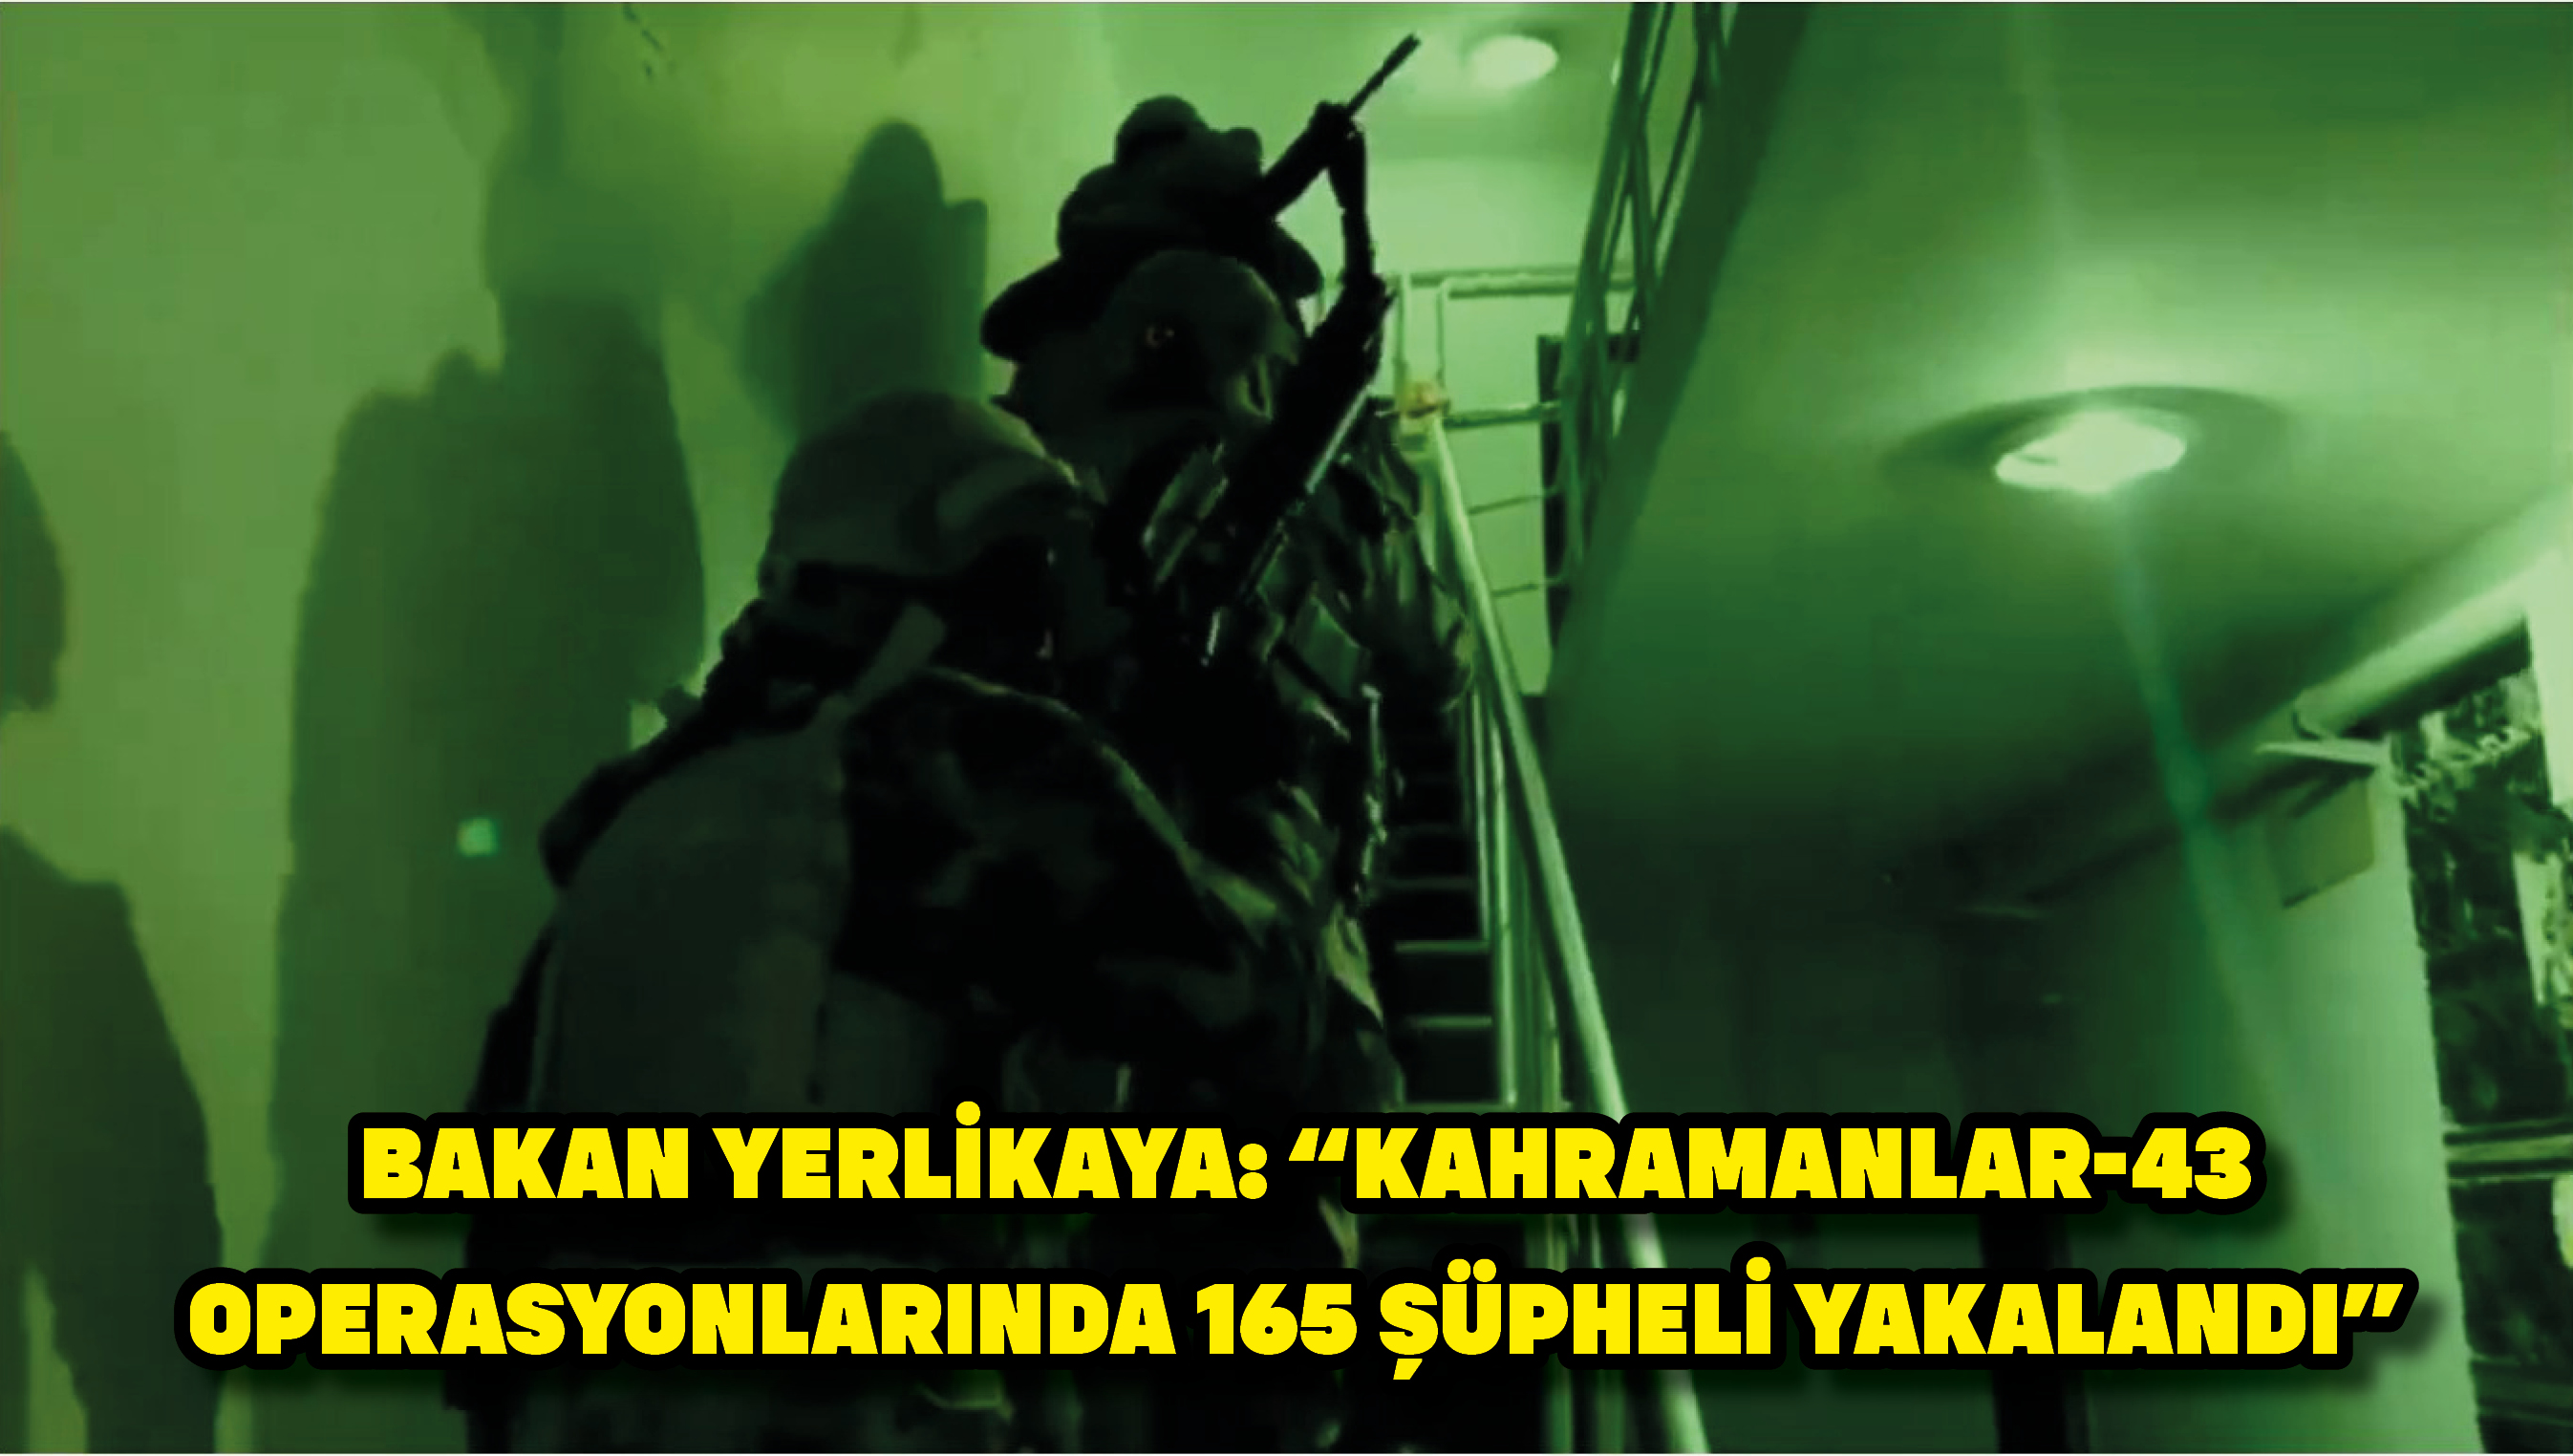 Bakan Yerlikaya: “Kahramanlar-43 operasyonlarında 165 şüpheli yakalandı”